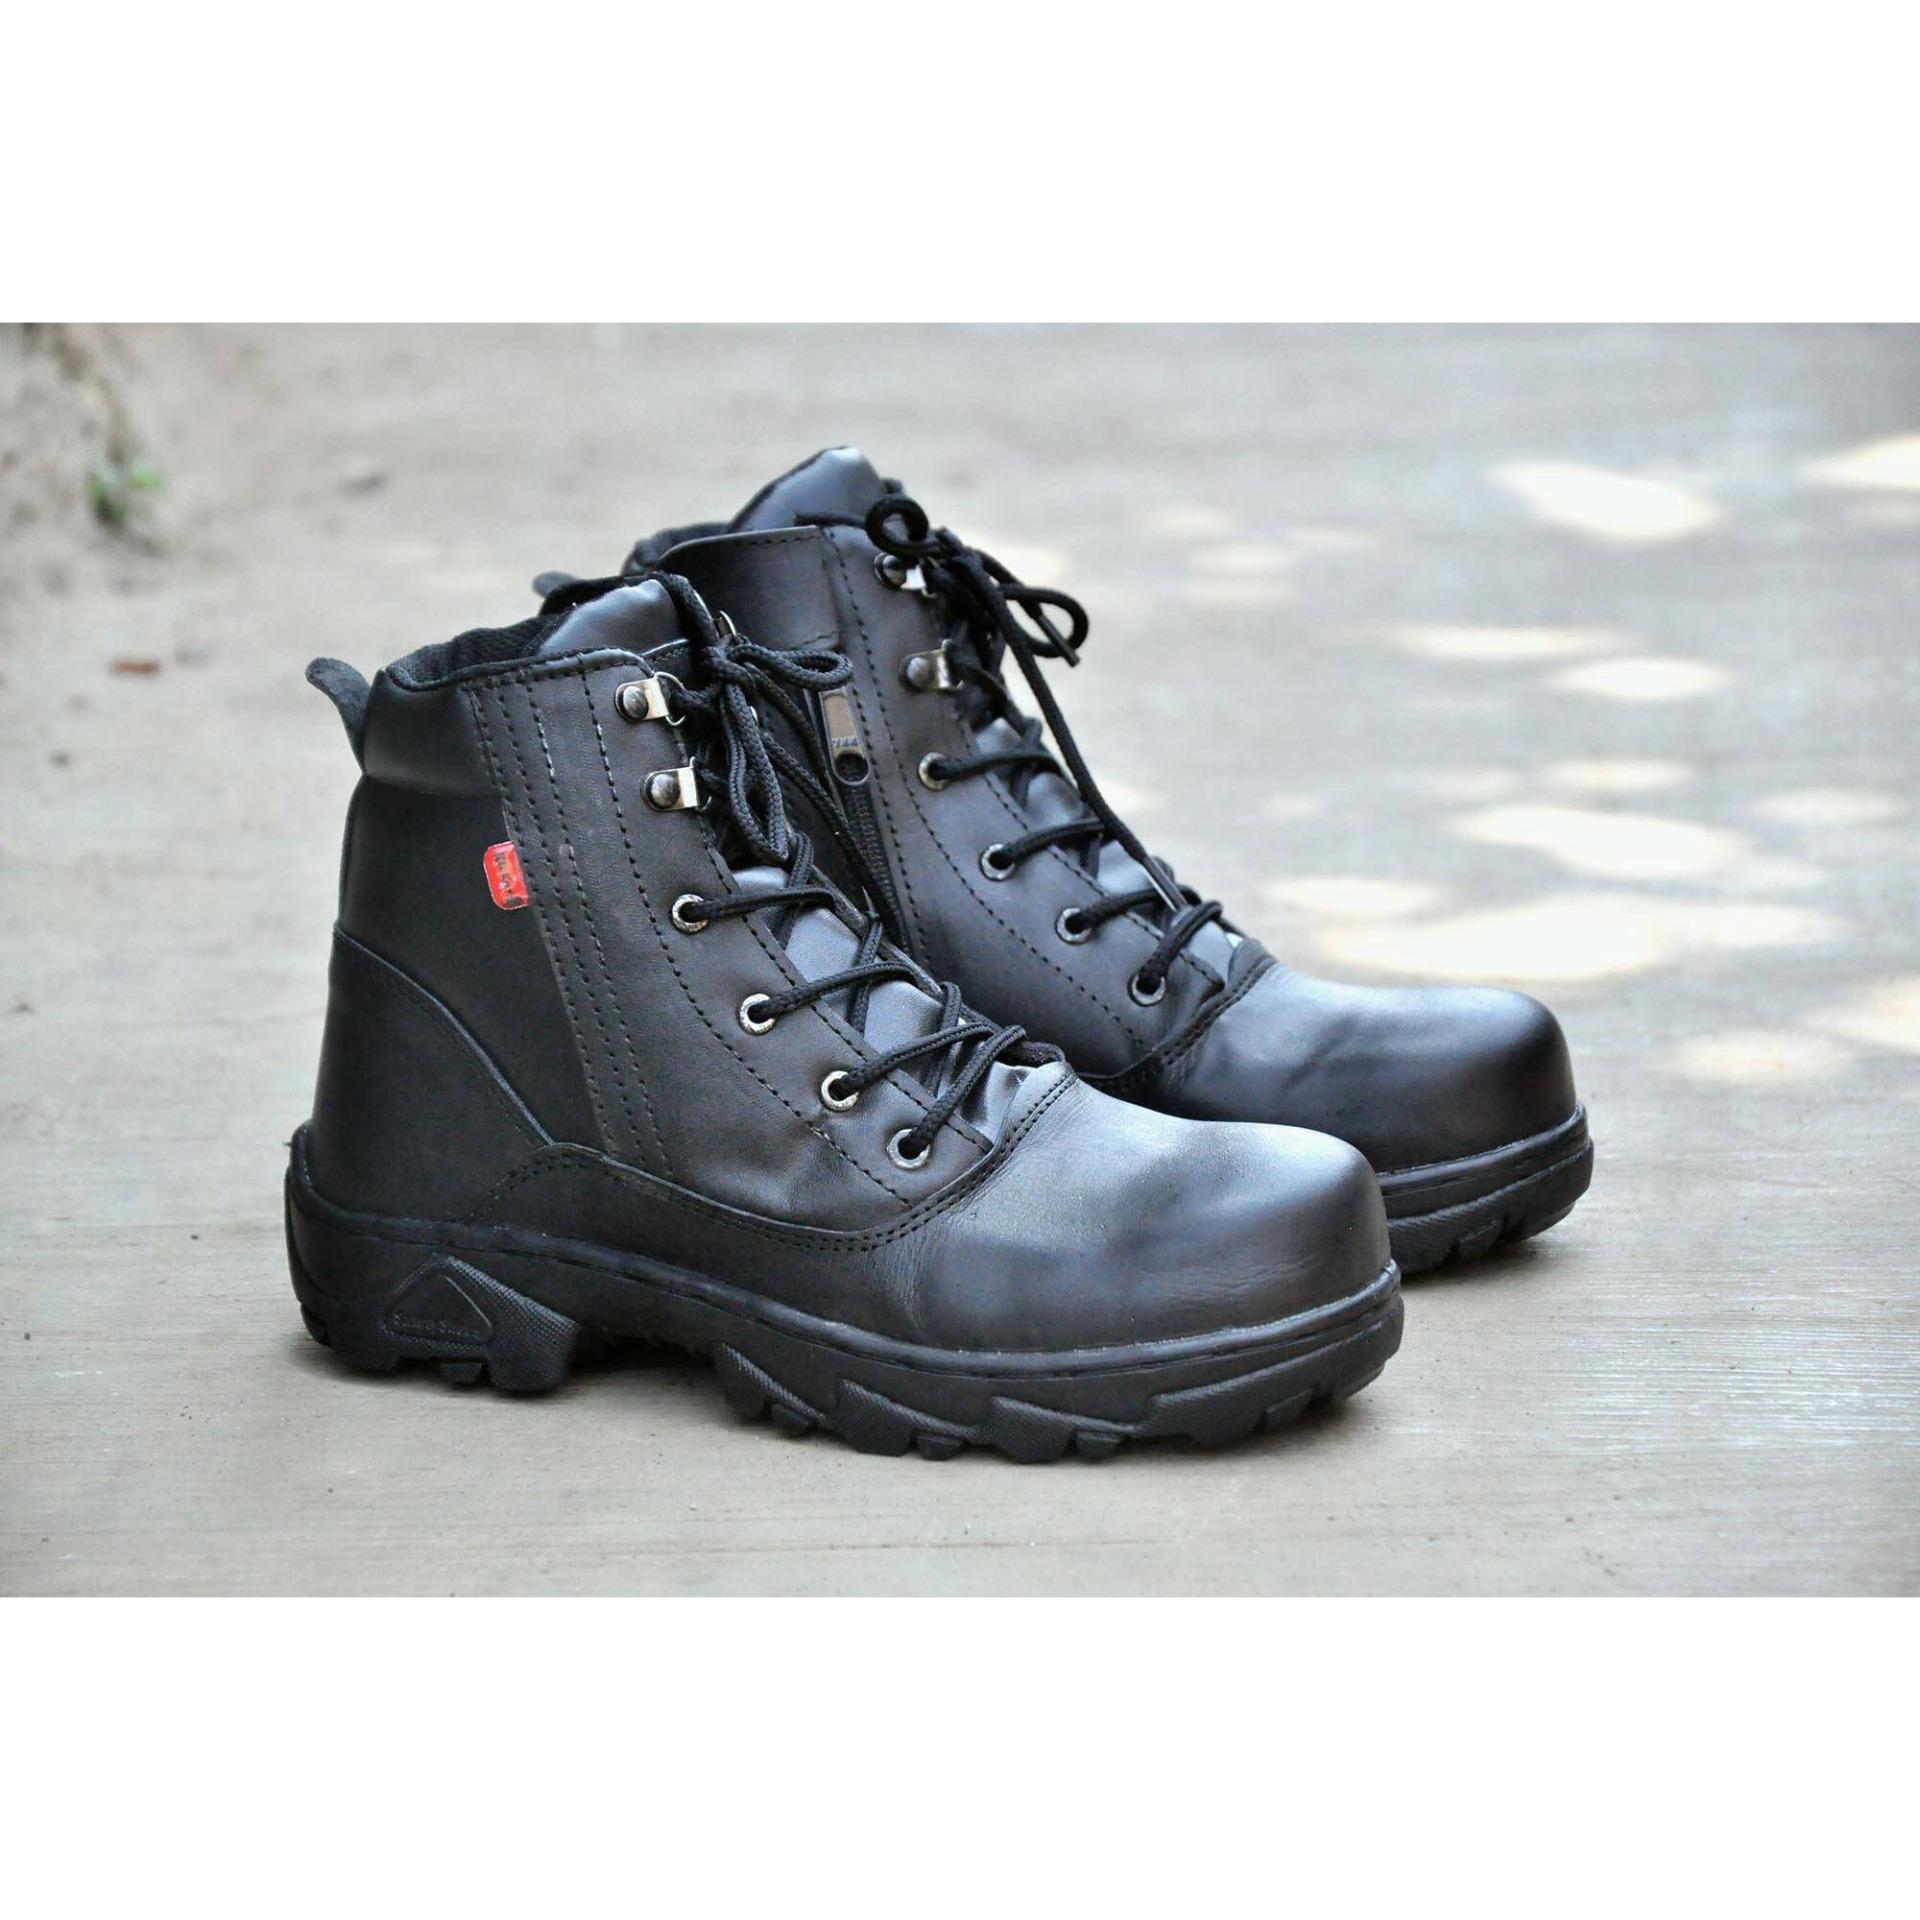 Sepatu Safety Boots Kulit Kickers Rambo